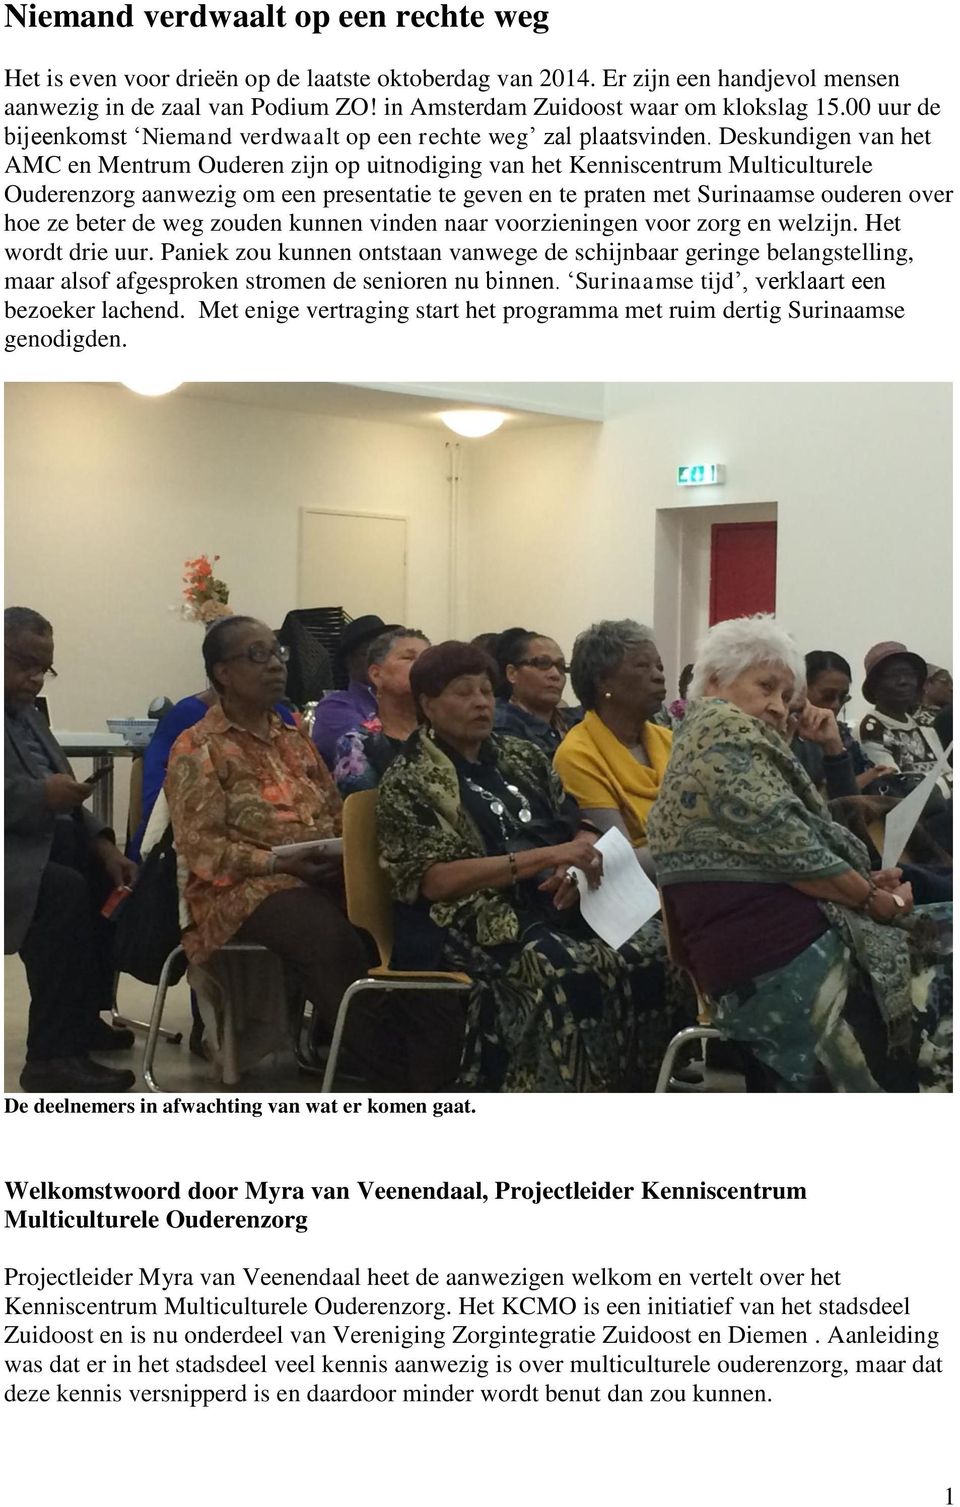 Deskundigen van het AMC en Mentrum Ouderen zijn op uitnodiging van het Kenniscentrum Multiculturele Ouderenzorg aanwezig om een presentatie te geven en te praten met Surinaamse ouderen over hoe ze